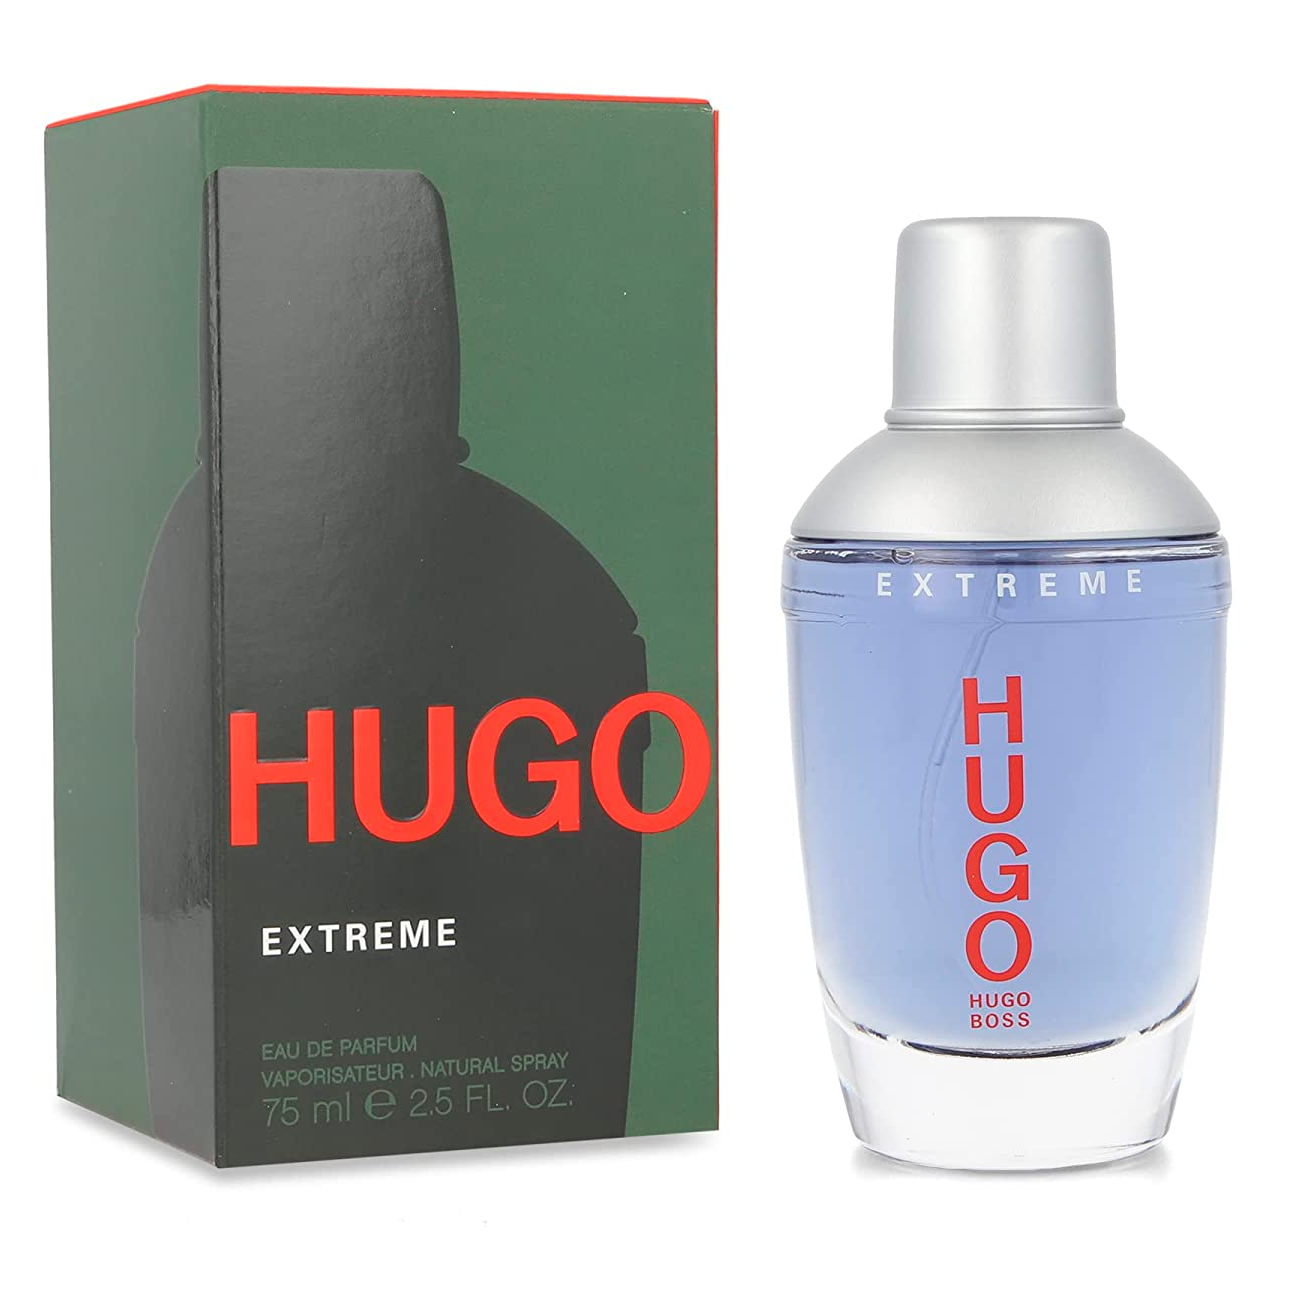 Hugo Boss Man Extreme Eau de Parfum Spray 75ml -Tester- Hugo Boss